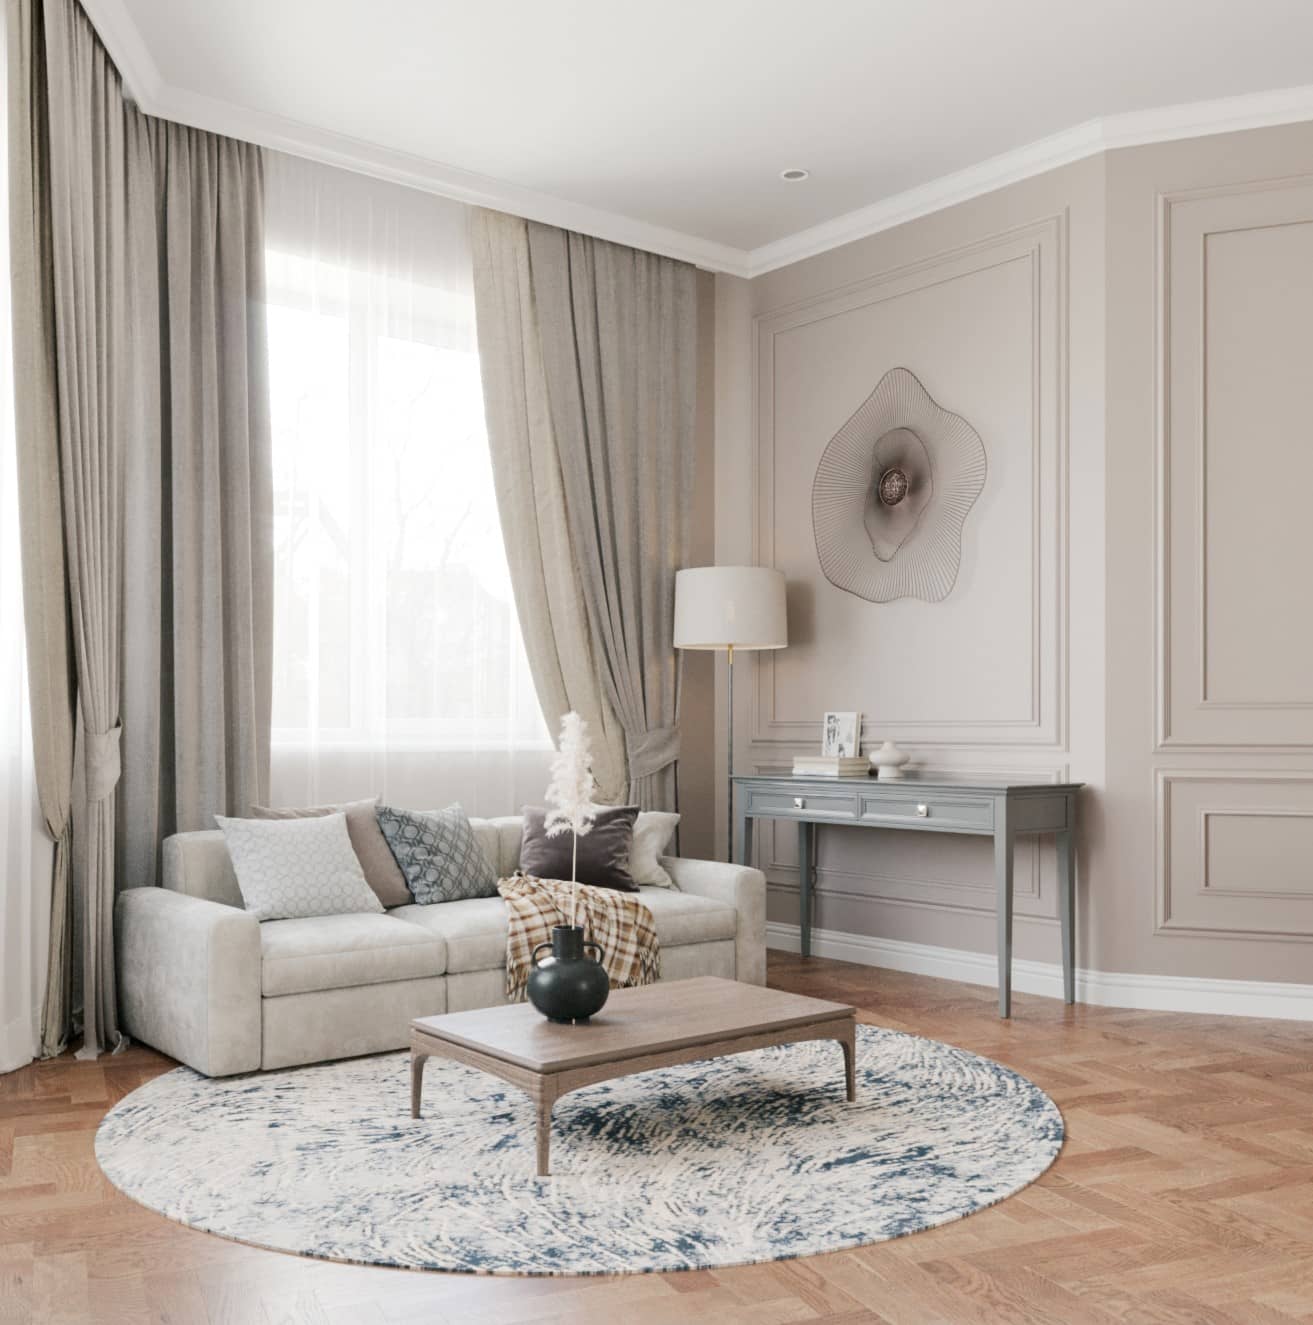 Оформление интерьера гостиной трехкомнатной квартиры в коричневый цвет в стиле современной классики. Фото № 62280.